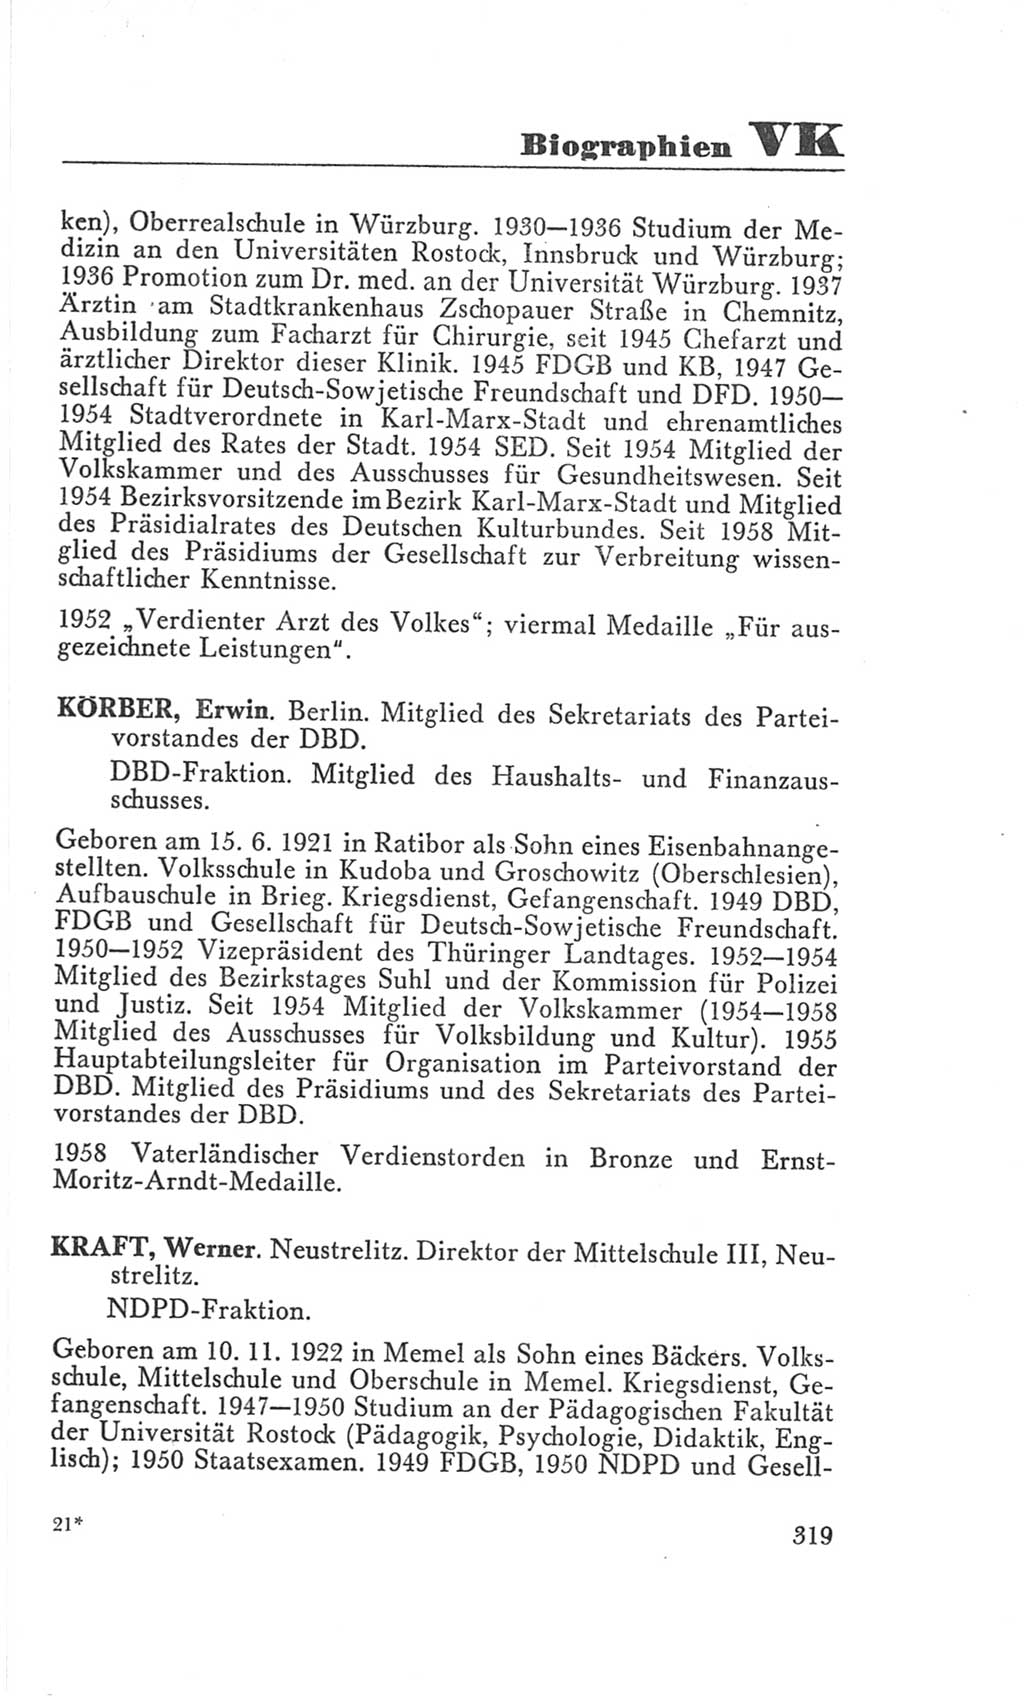 Handbuch der Volkskammer (VK) der Deutschen Demokratischen Republik (DDR), 3. Wahlperiode 1958-1963, Seite 319 (Hdb. VK. DDR 3. WP. 1958-1963, S. 319)